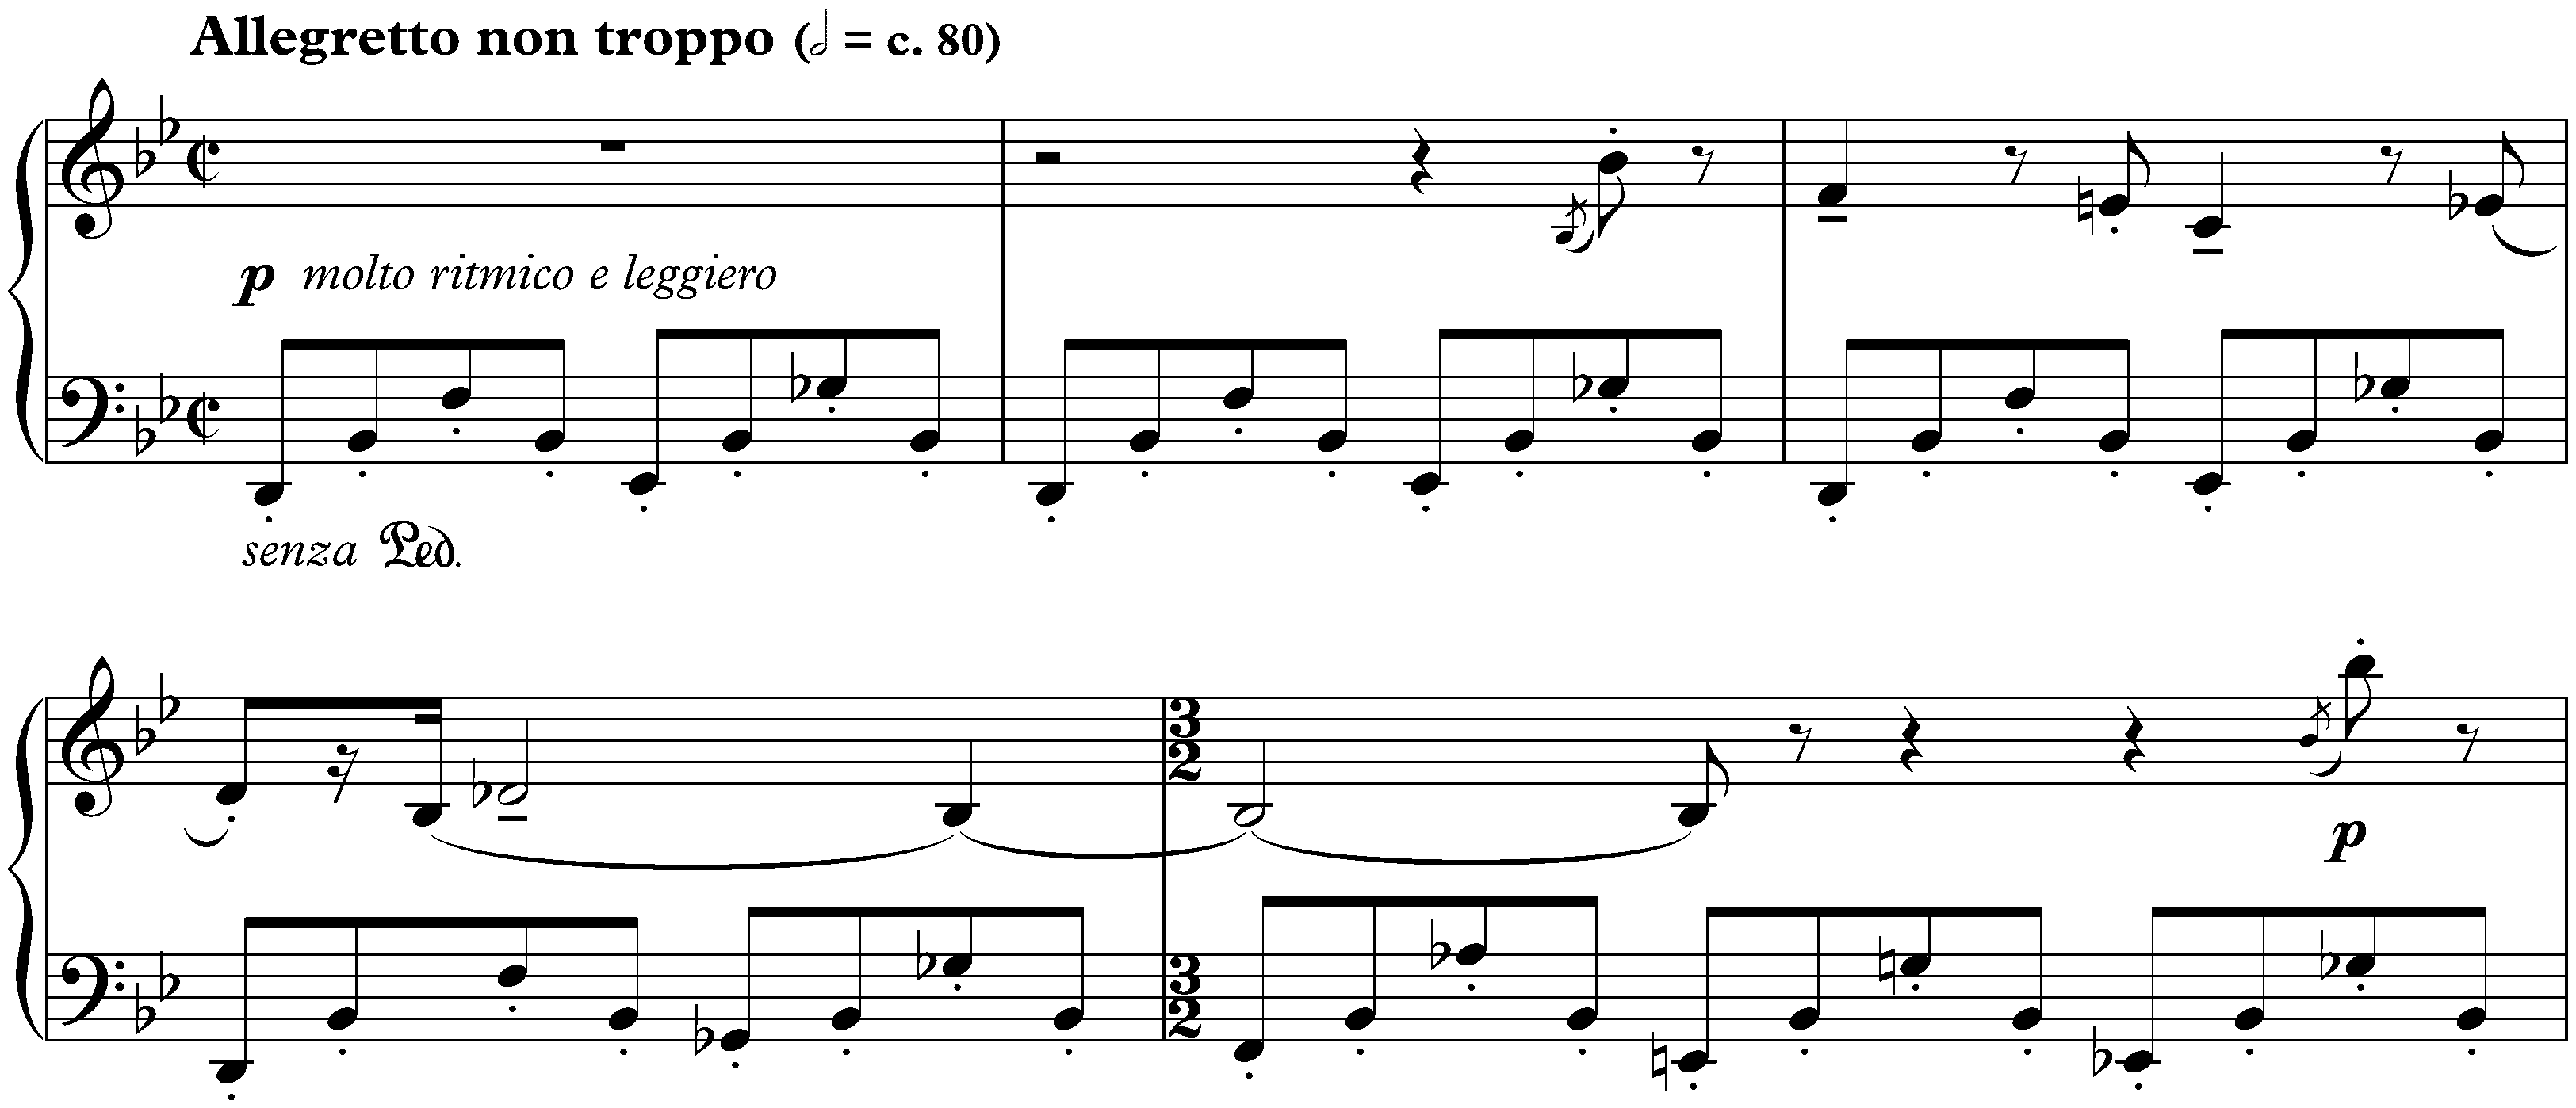 Five Bagatelles, op. 9; 5. Allegretto non troppo